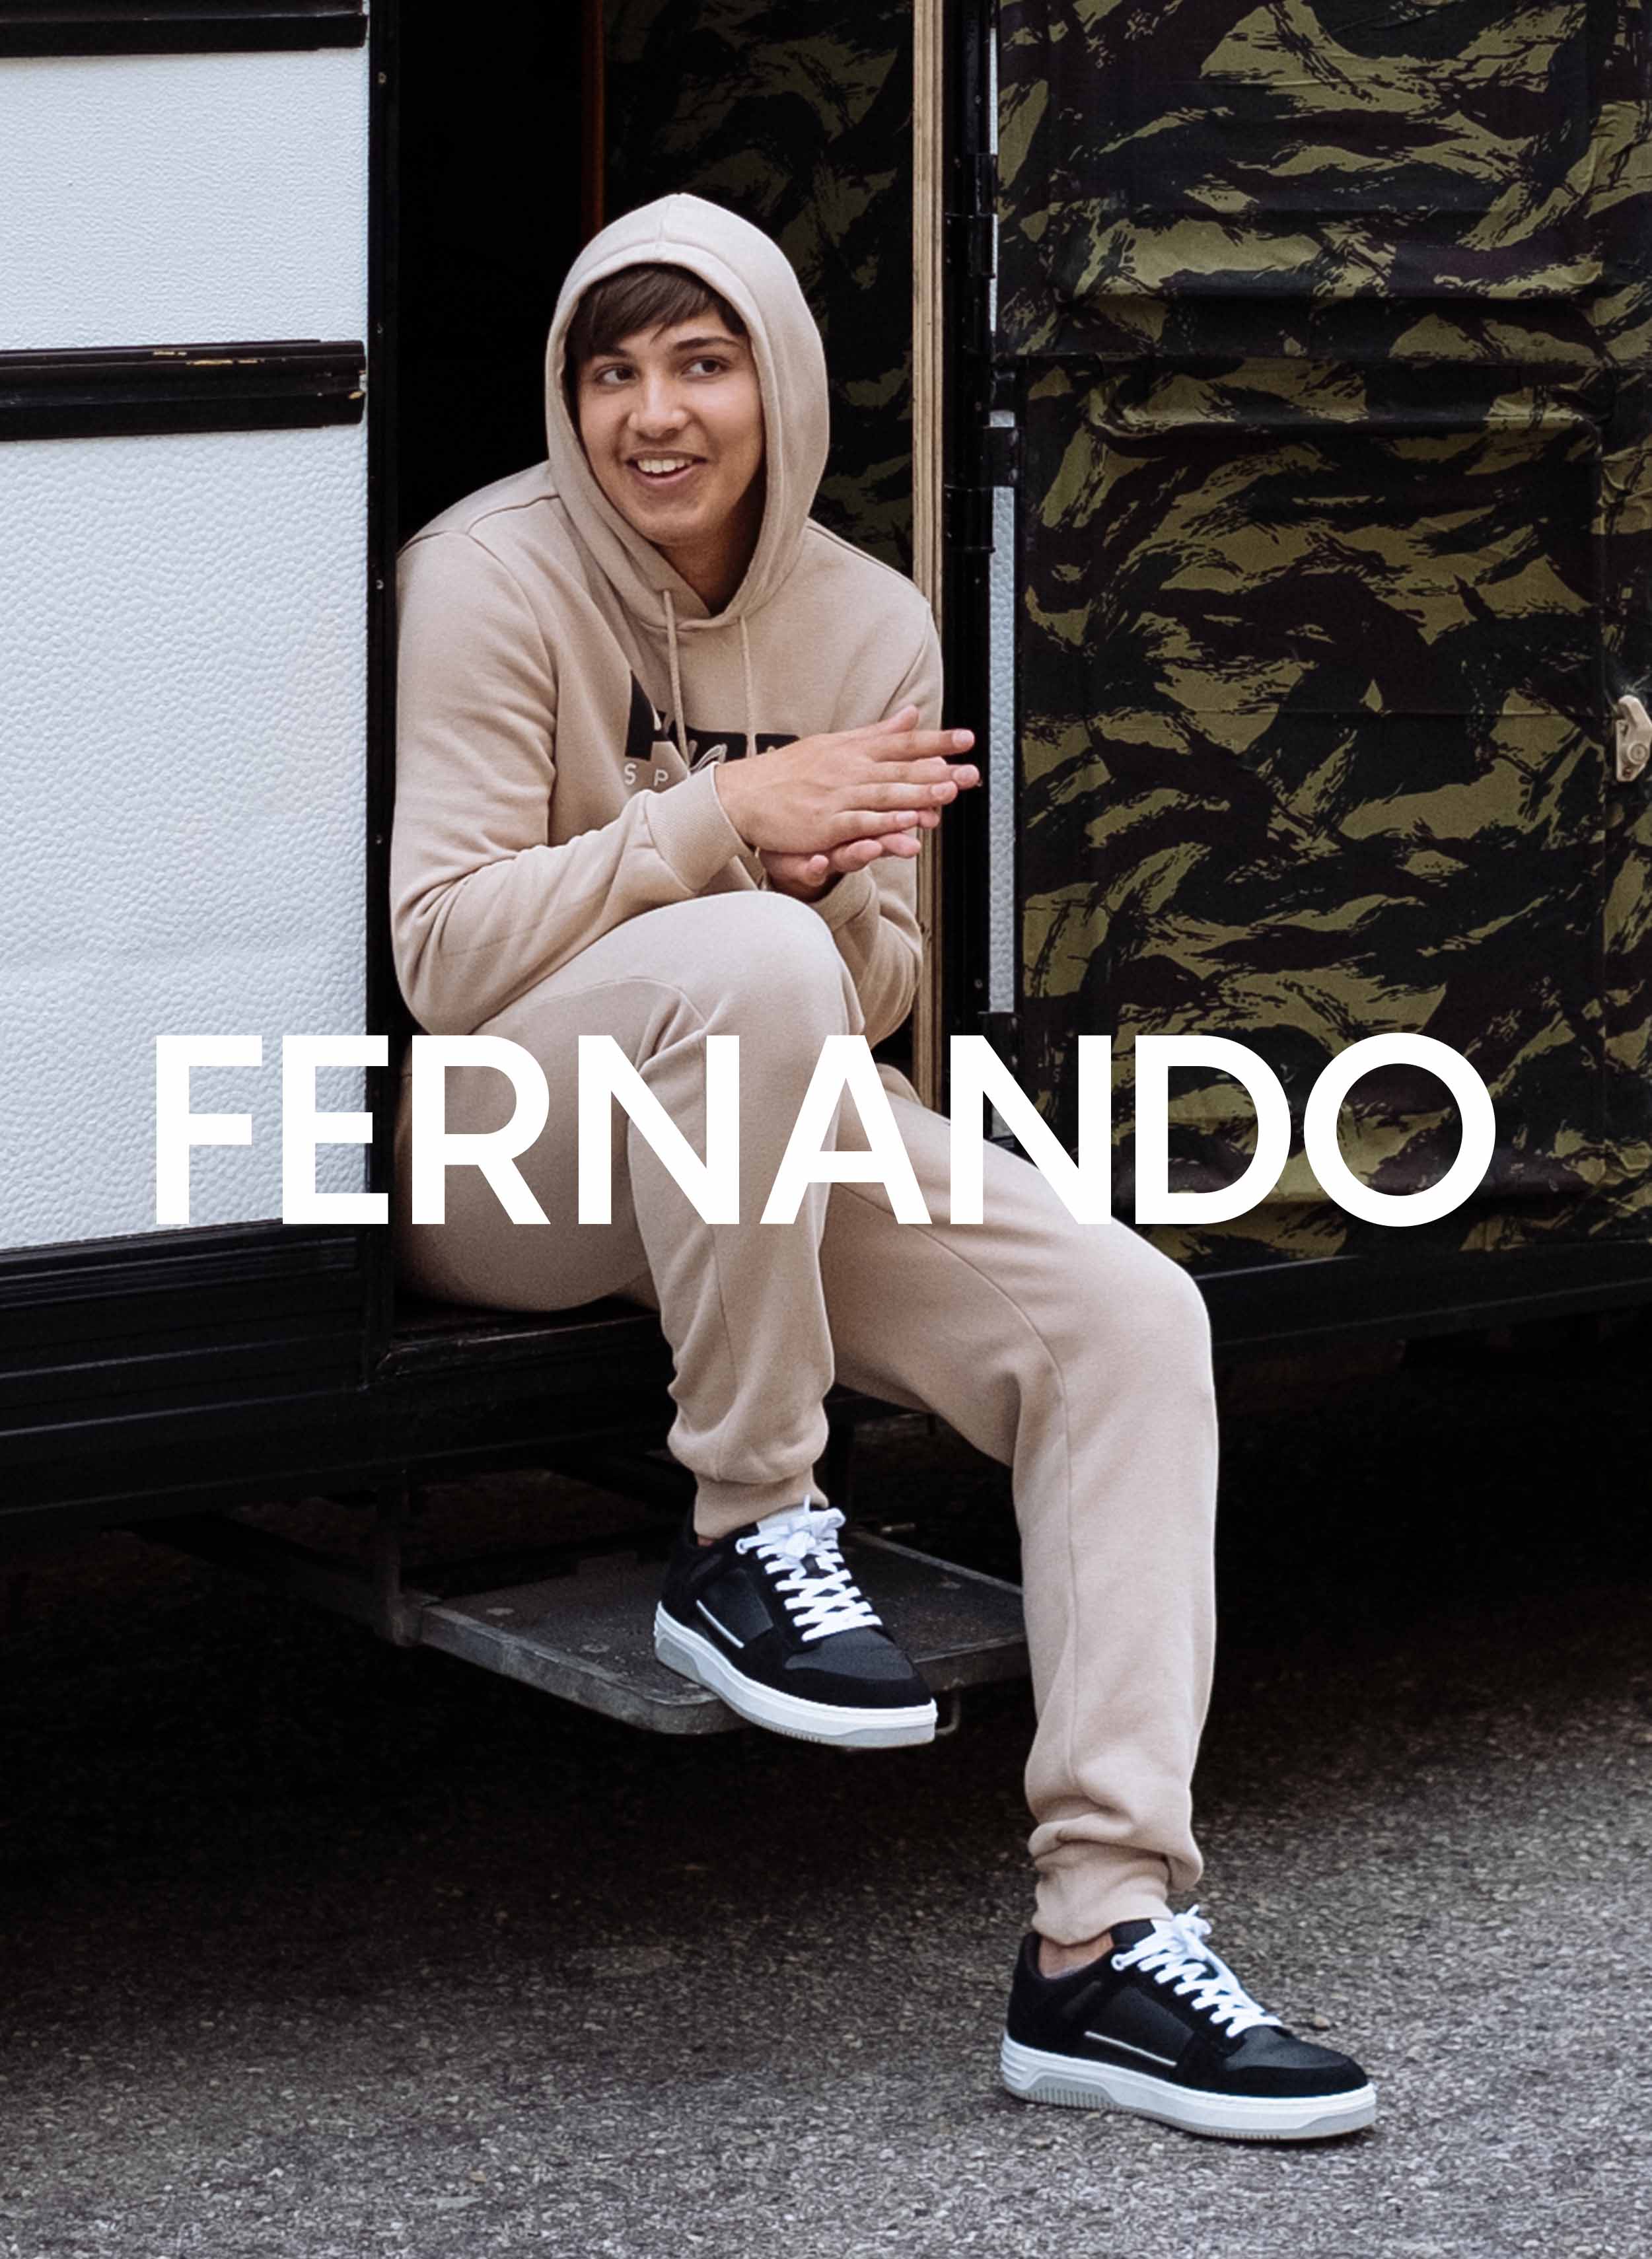 Fernando assis dans un camping-car, portant Diverge sneakers, promouvant l’impact social et les chaussures personnalisées à travers le projet Imagine.